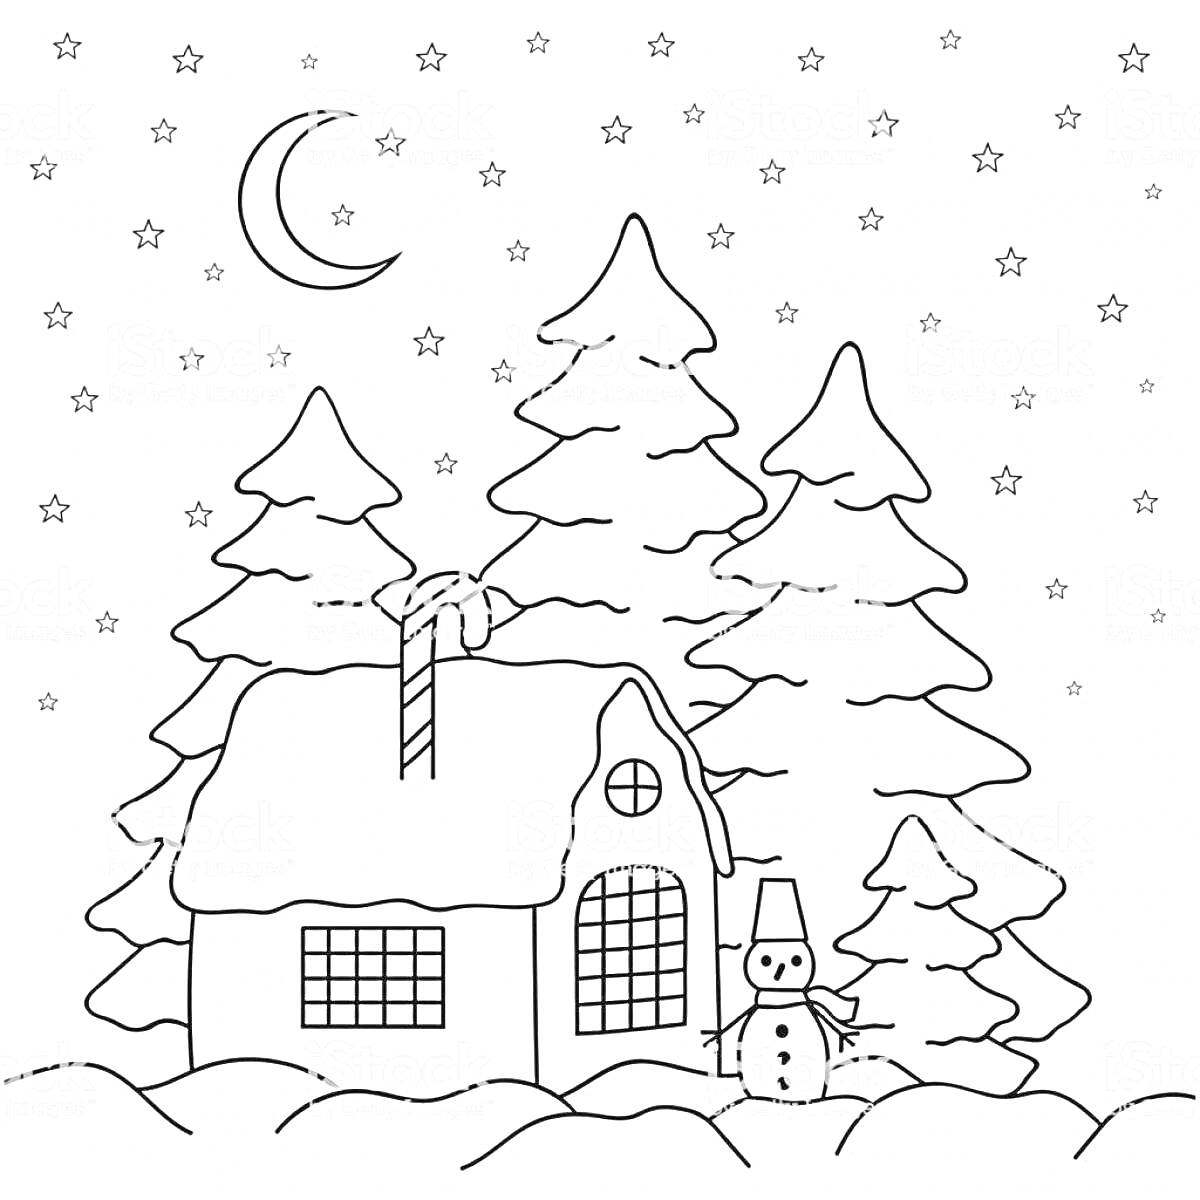 Раскраска Домик в лесу с елками, снеговиком, месяцем и звездами